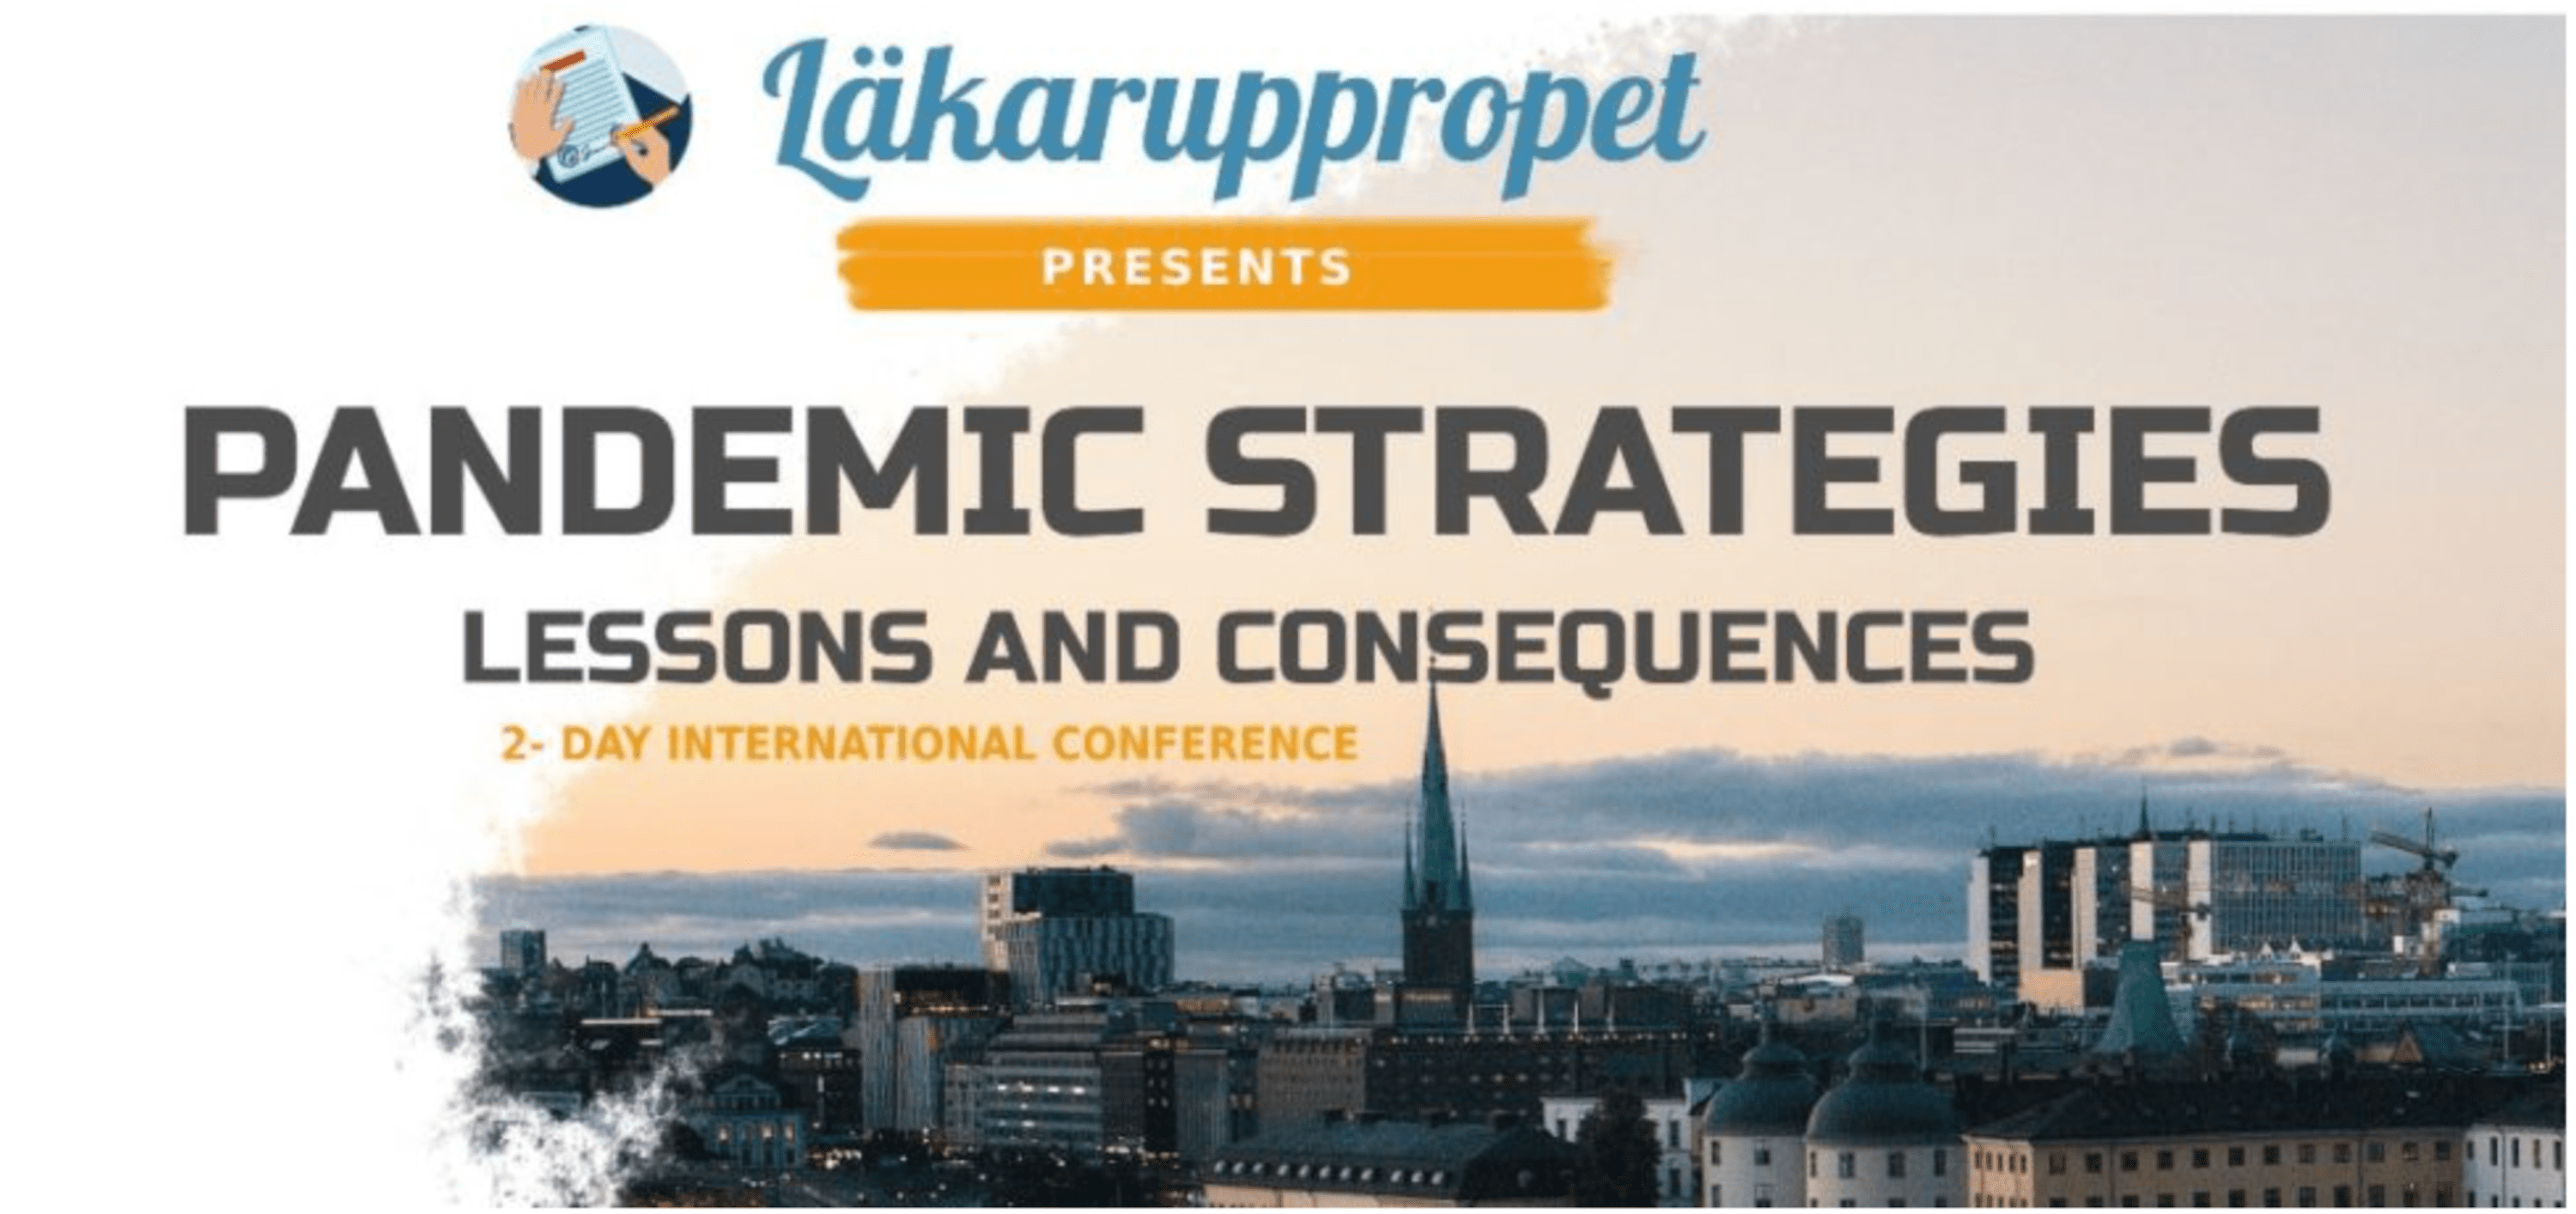 pandemie-strategien:-lehren-und-konsequenzen-–-internationale-konferenz-in-stockholm-|-stimme-fuer-wissenschaft-und-solidaritaet